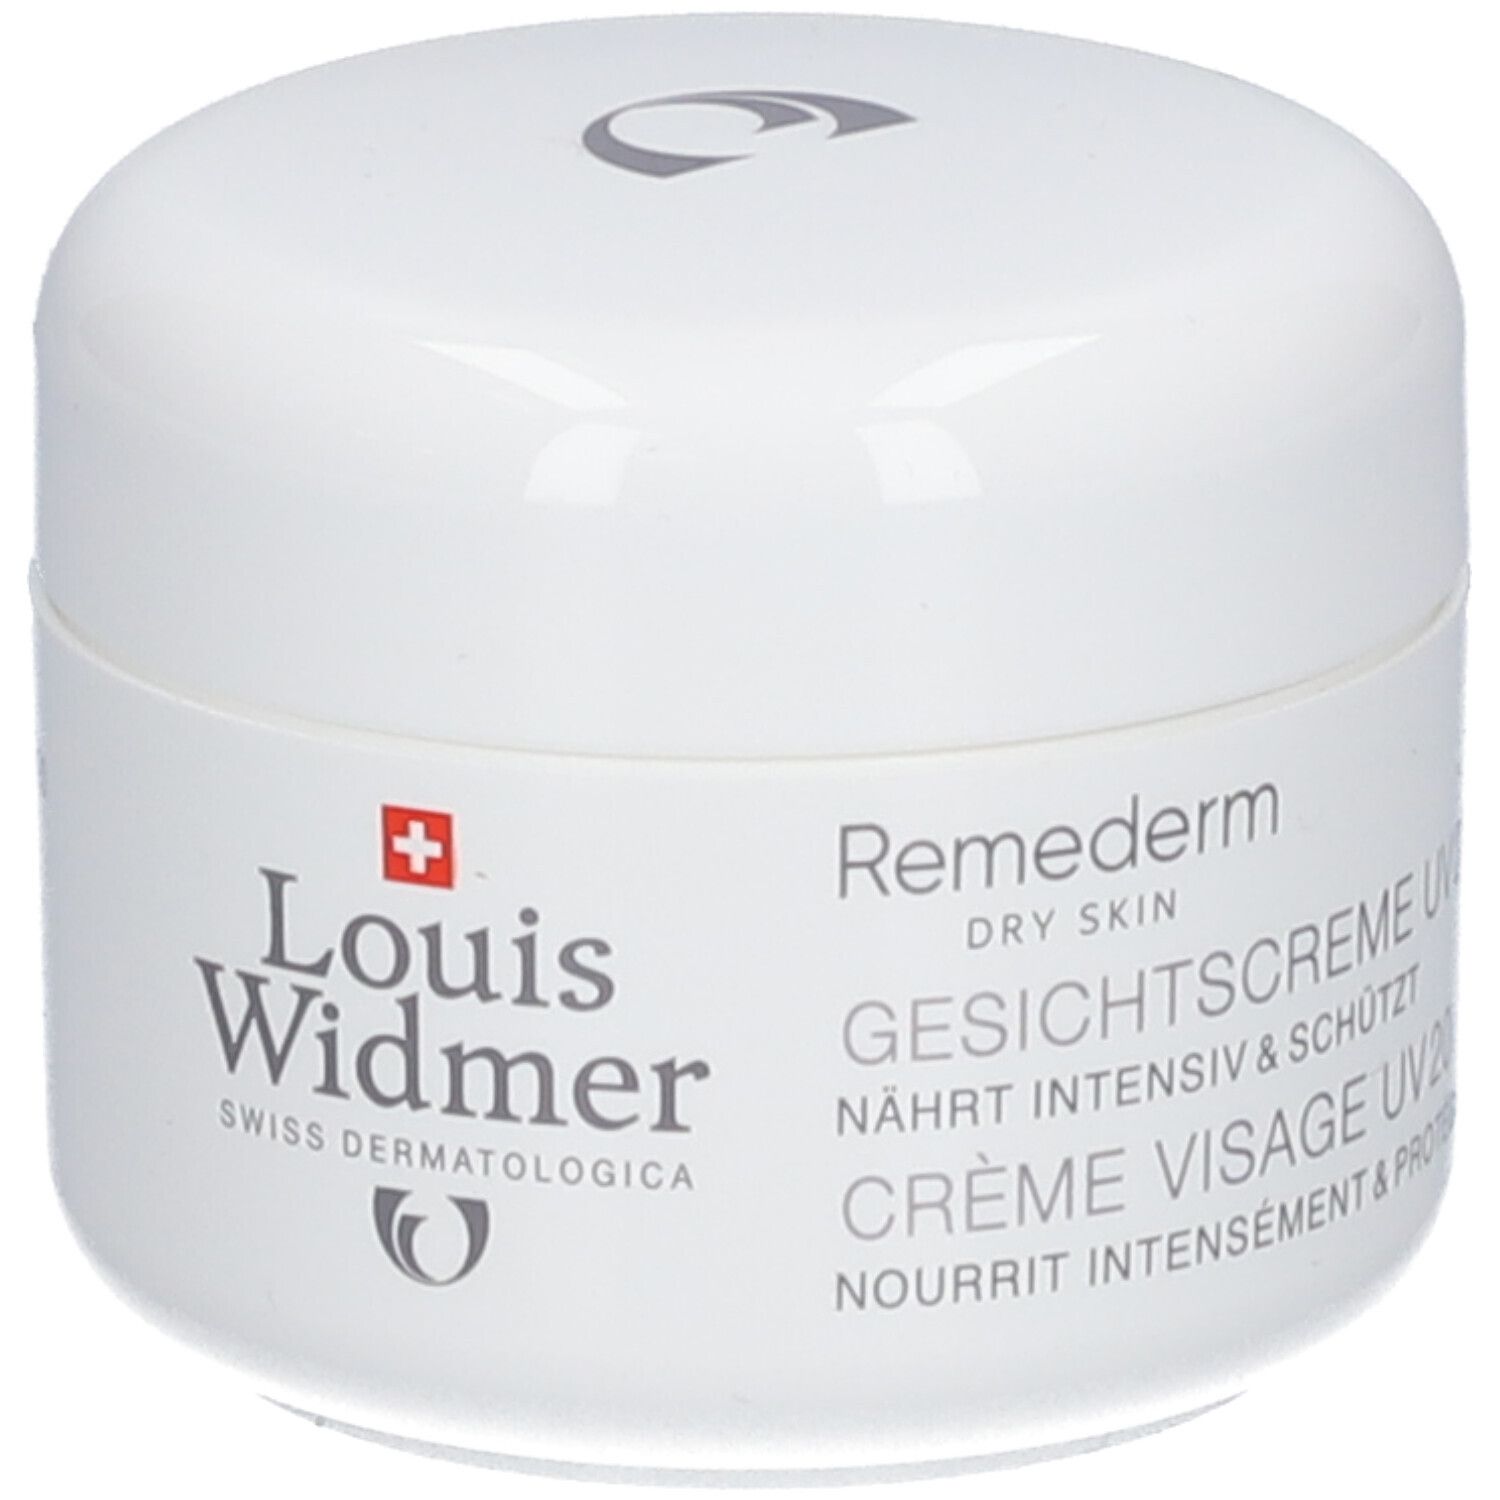 Louis Widmer Remederm Gesichtscreme UV 20 unparfümiert